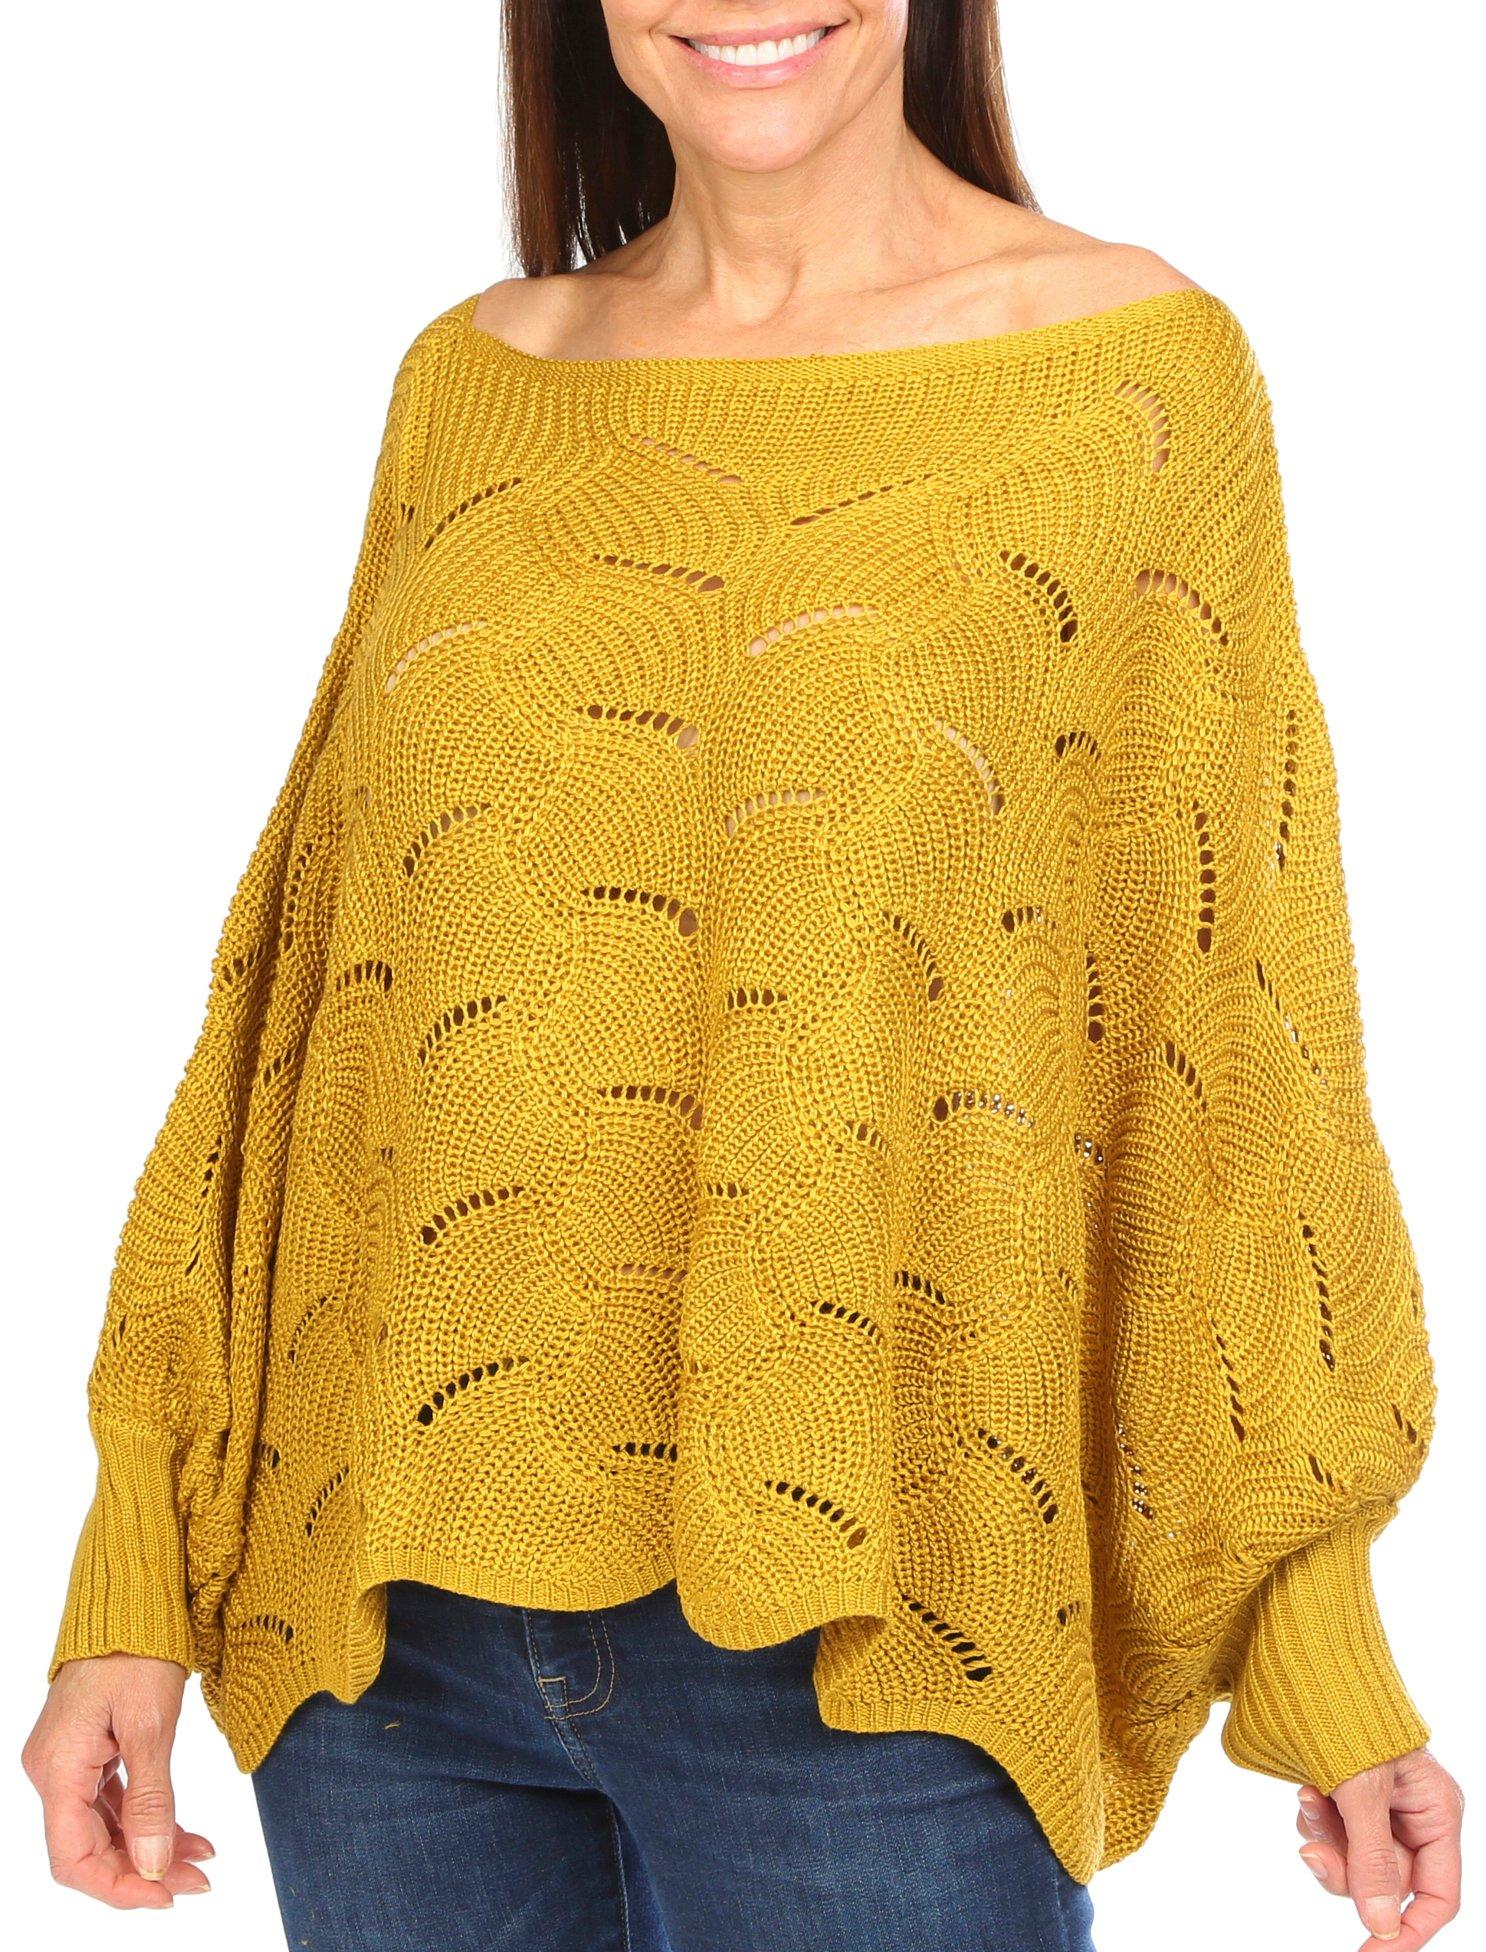 Women's Long Sleeve Crocheted Sweater